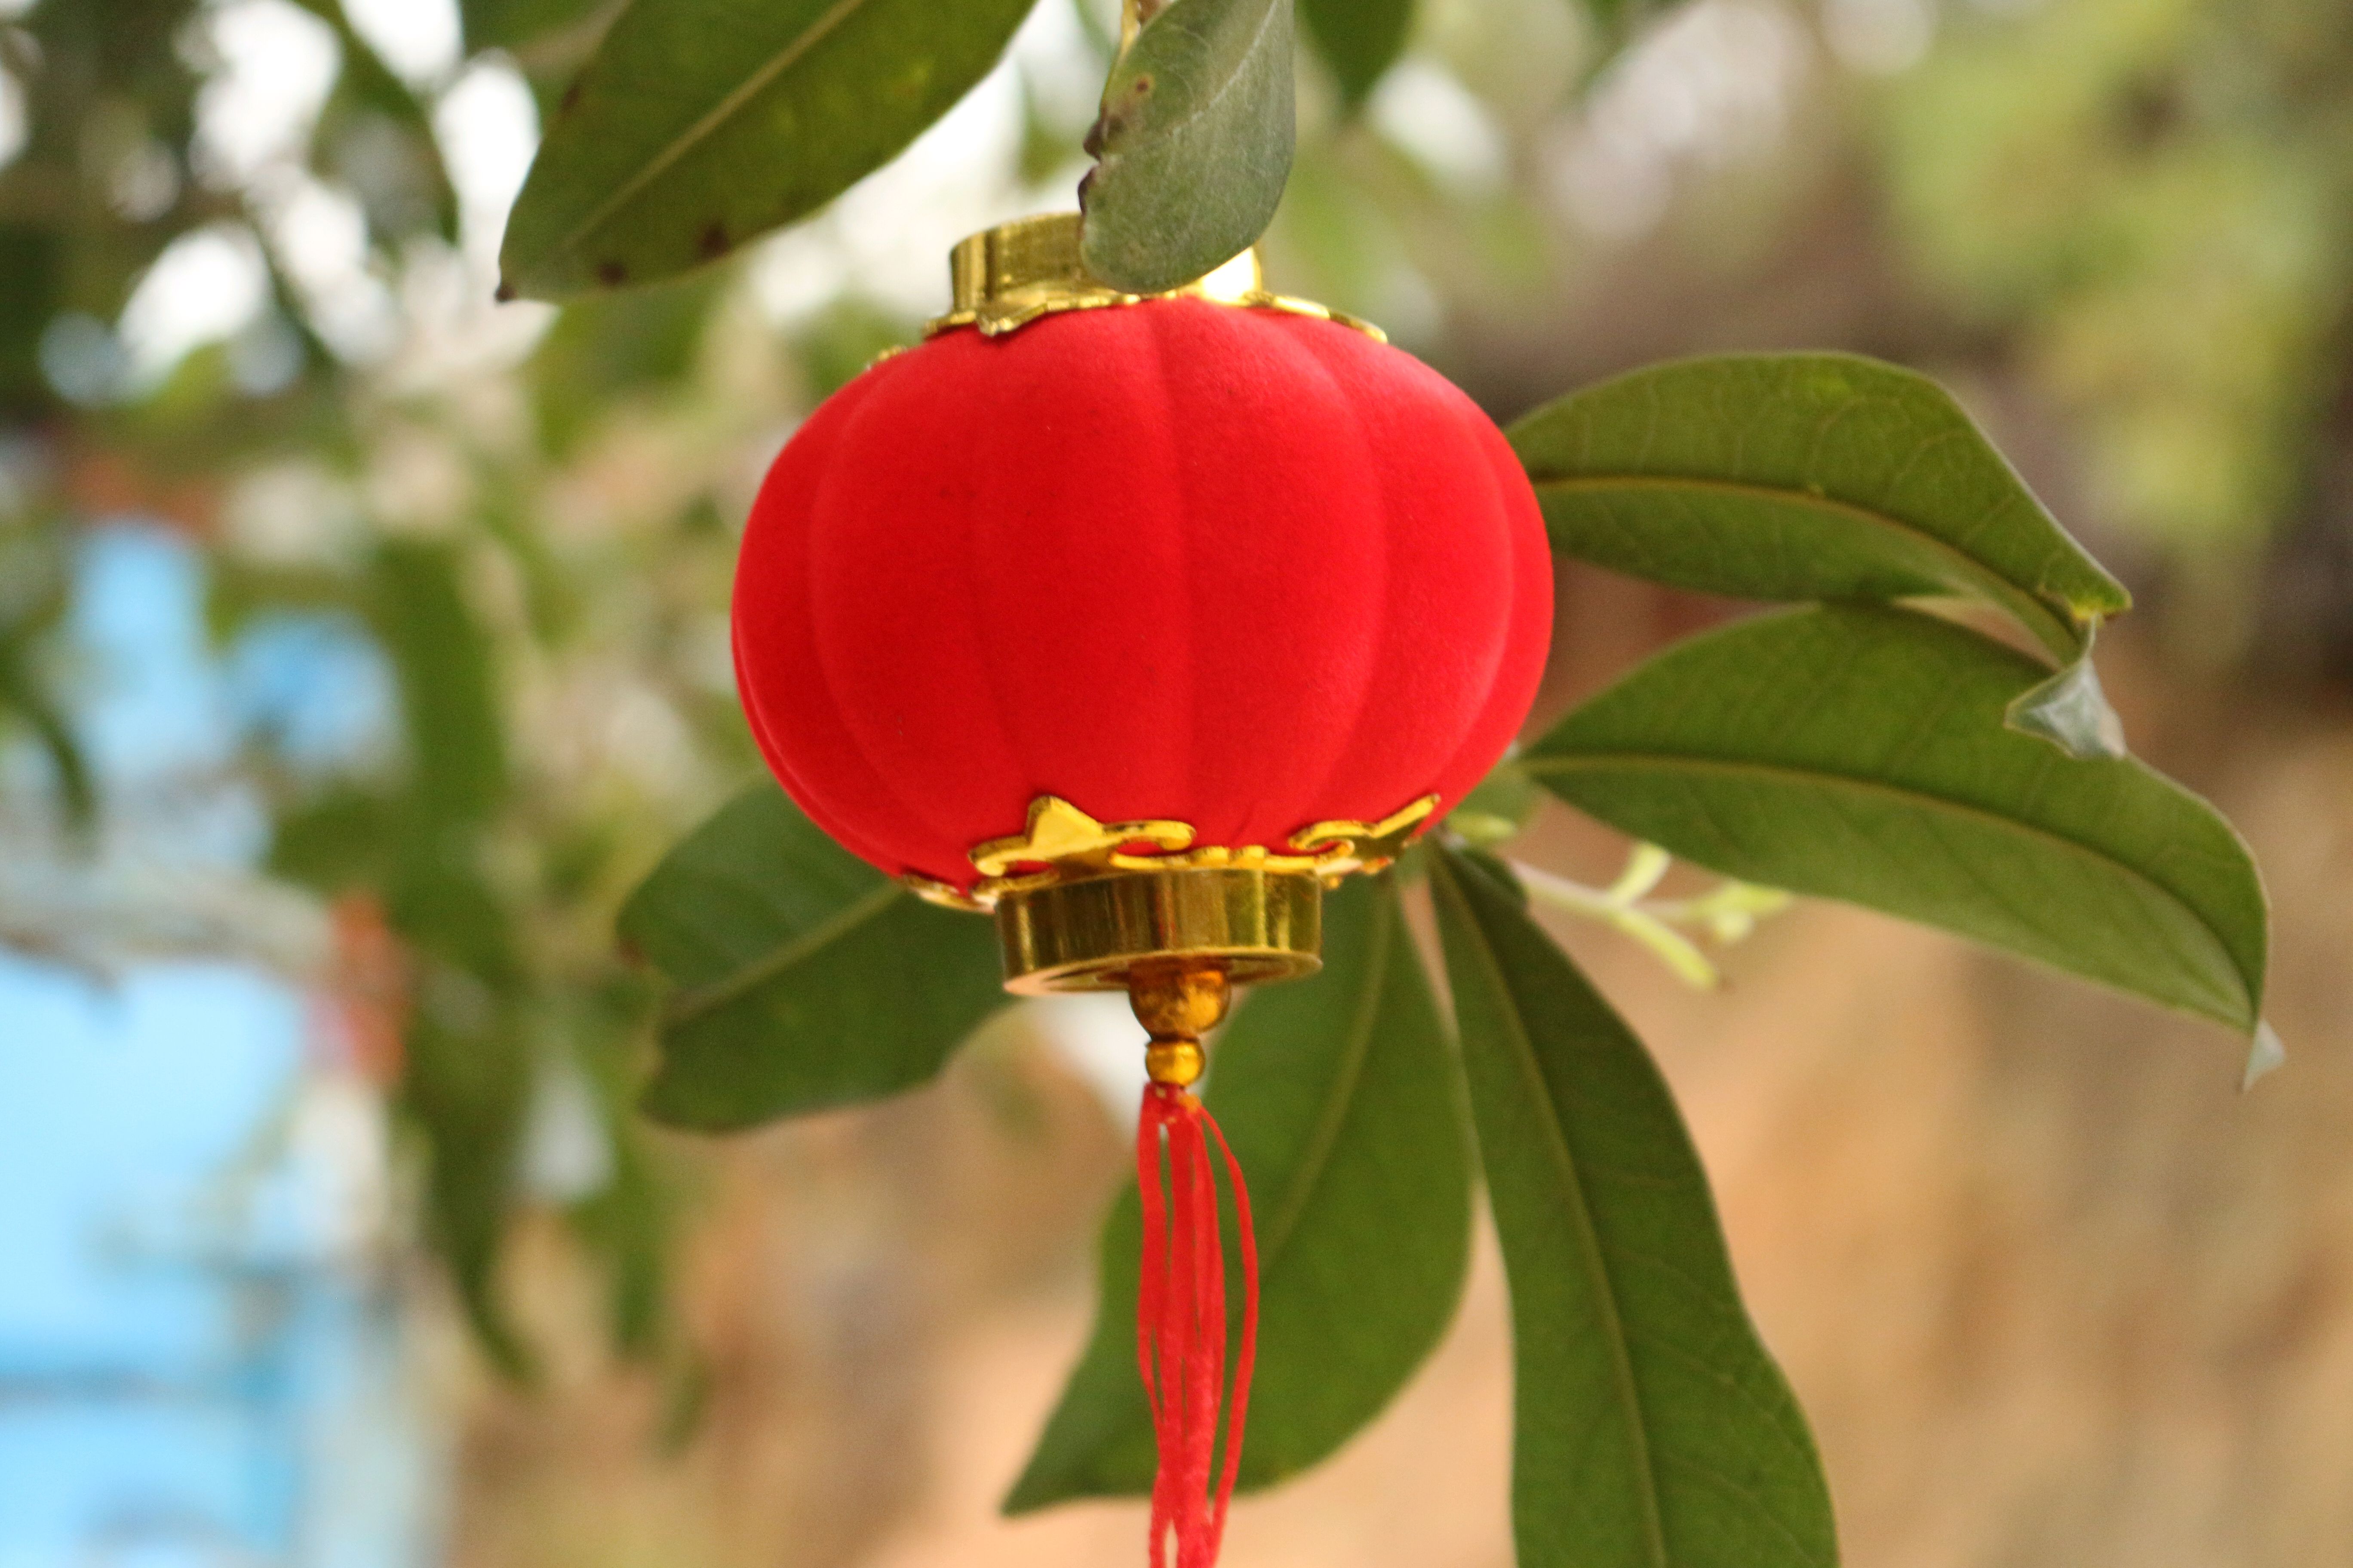 红色的小灯笼挂在枝头,犹如果树结的果实一样,光鲜亮丽,美丽至极!